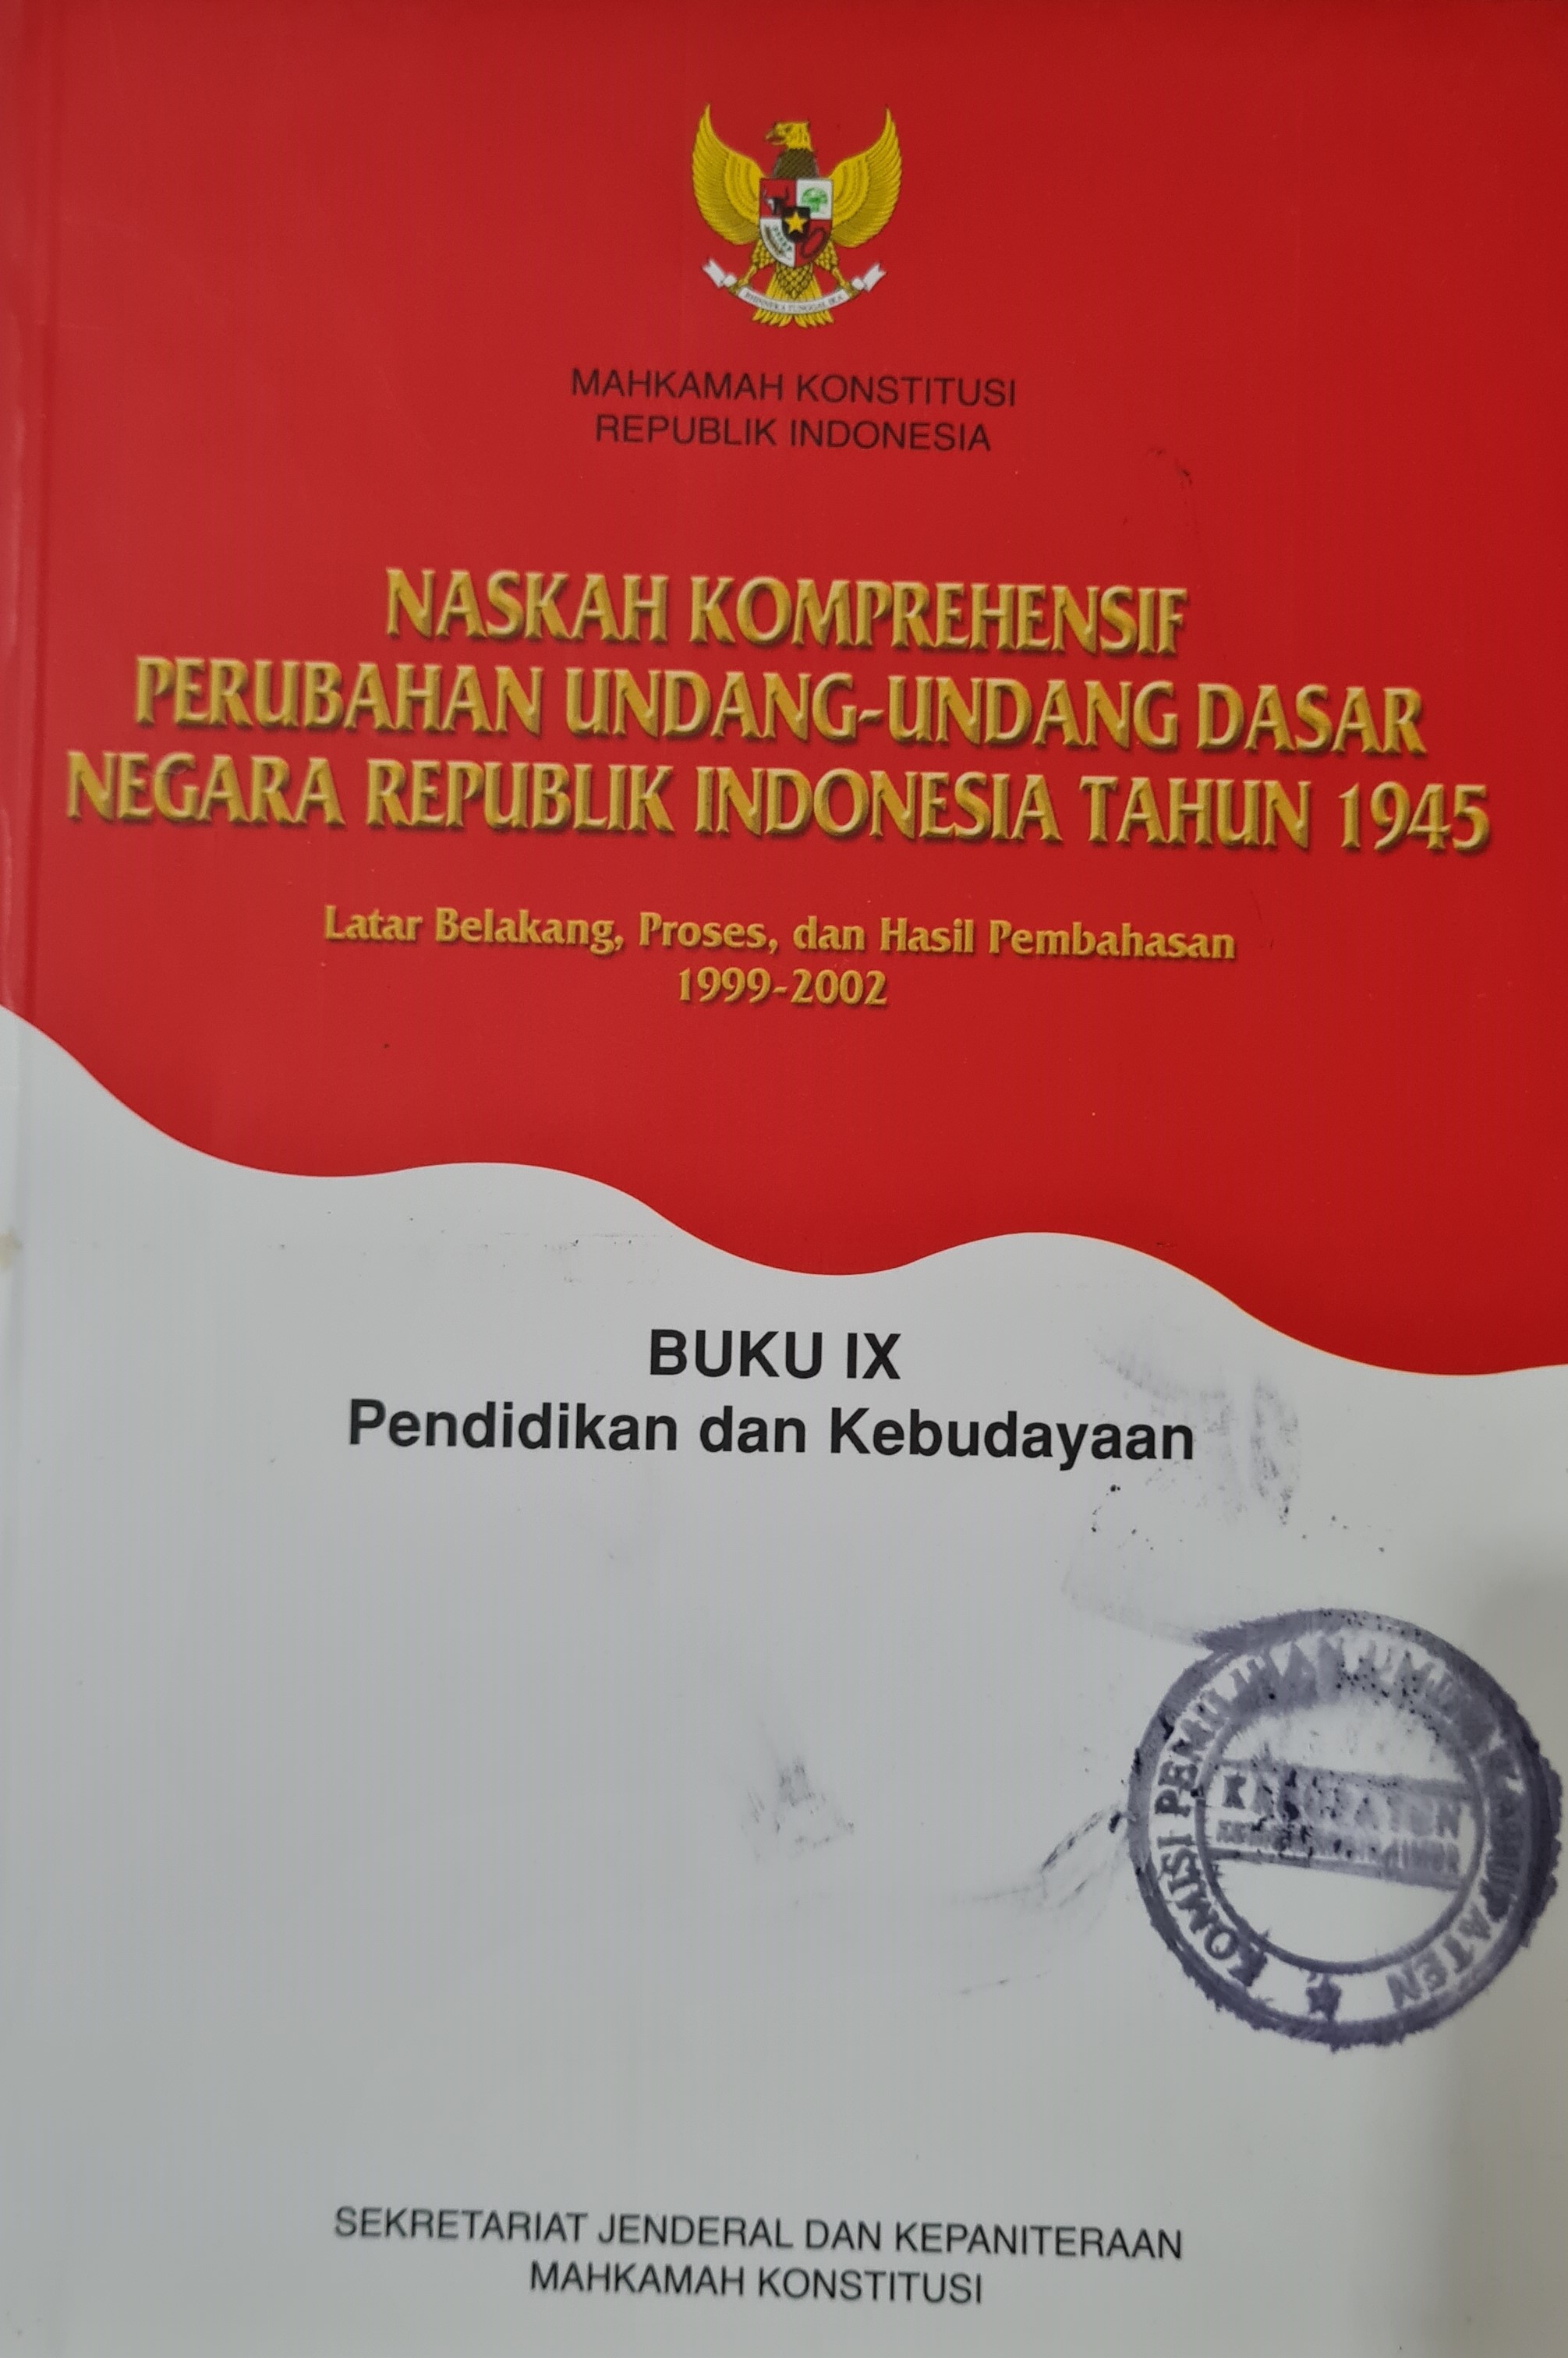 Naskah Komprehensif Perubahan Undang-Undang Dasar Negara Republik Indonesia Tahun 1945 Buku IX Pendidikan dan Kebudayaan